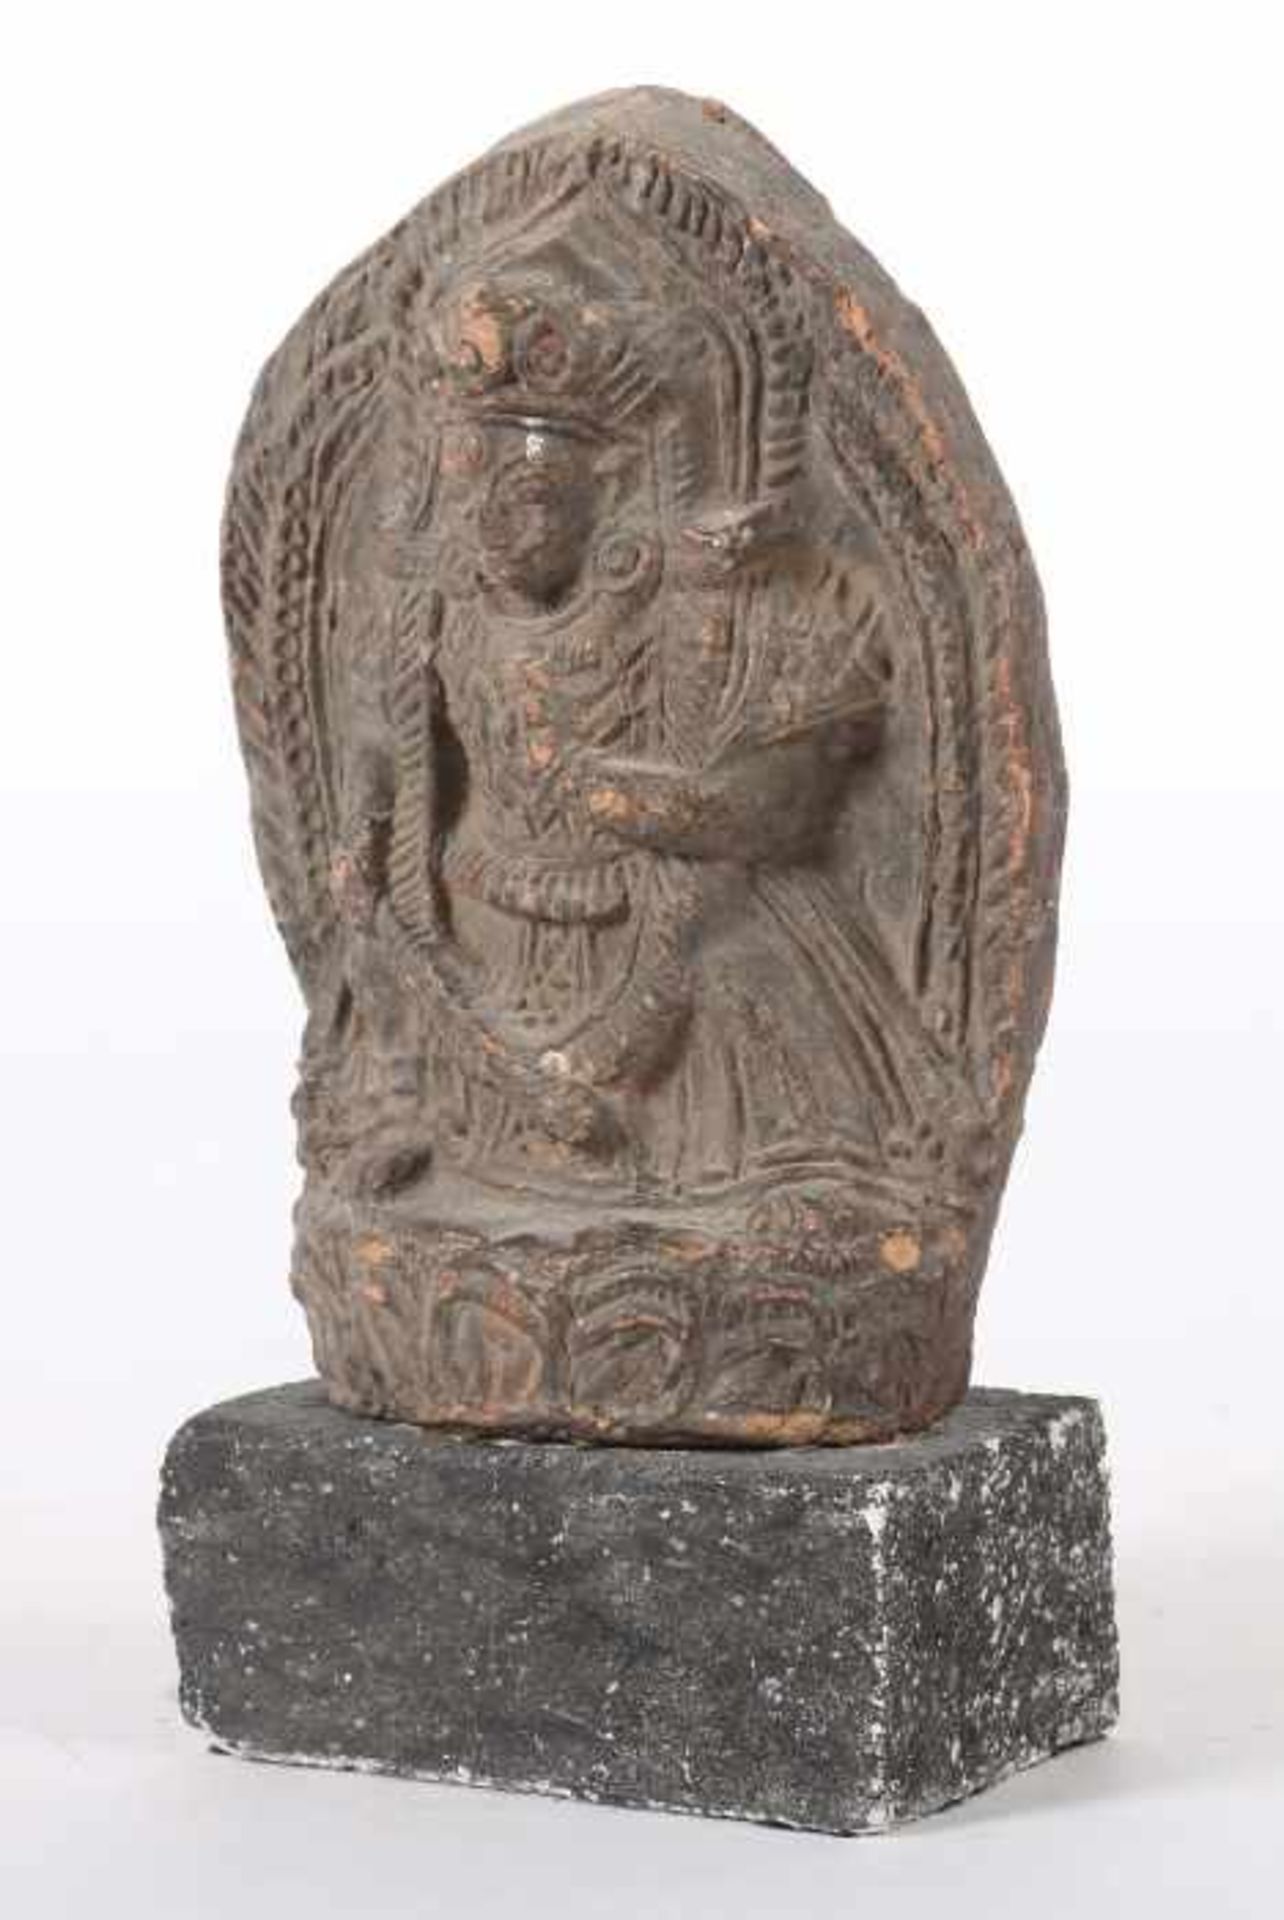 VotivtafelTibet, wohl 18. Jh., roter Scherben, gefasst, Darstellung des Manjushri auf - Bild 2 aus 3